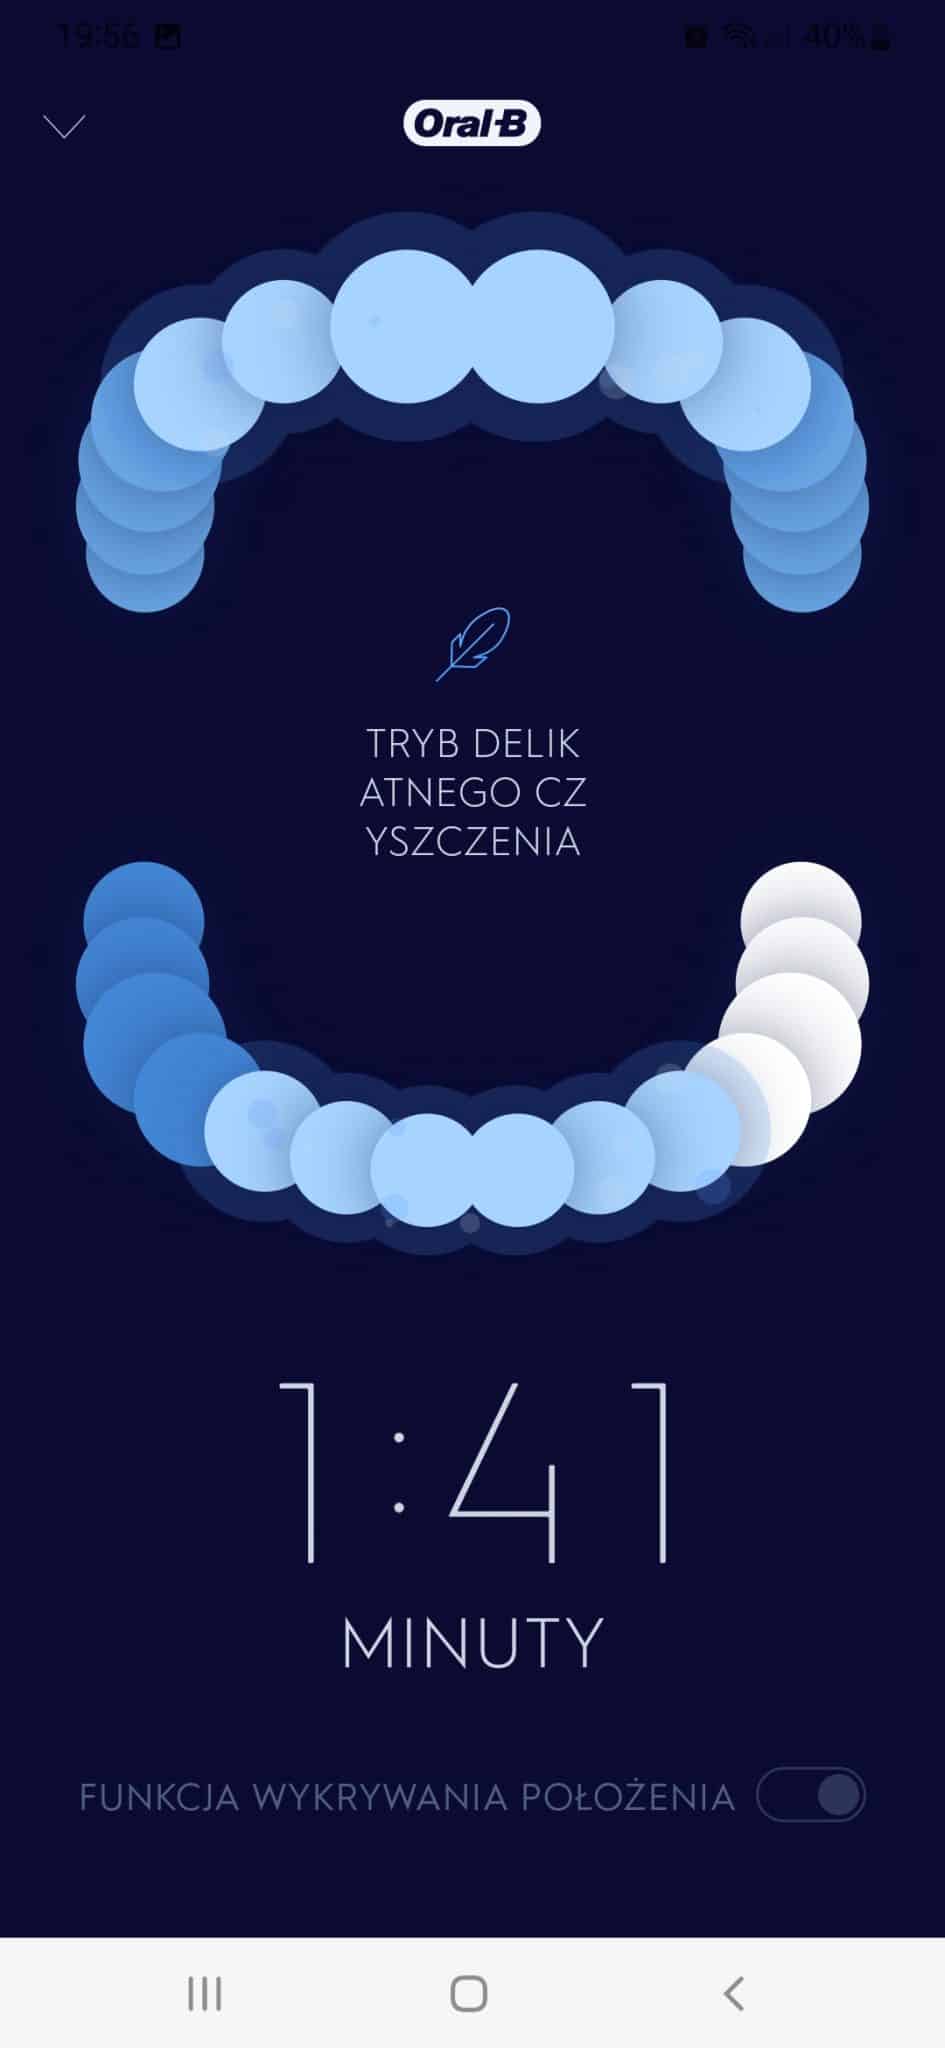 Zrzut ekranu z aplikacji mobilnej Oral-B z grafiką przedstawiajacą postępy czyszczenia zębów i timer